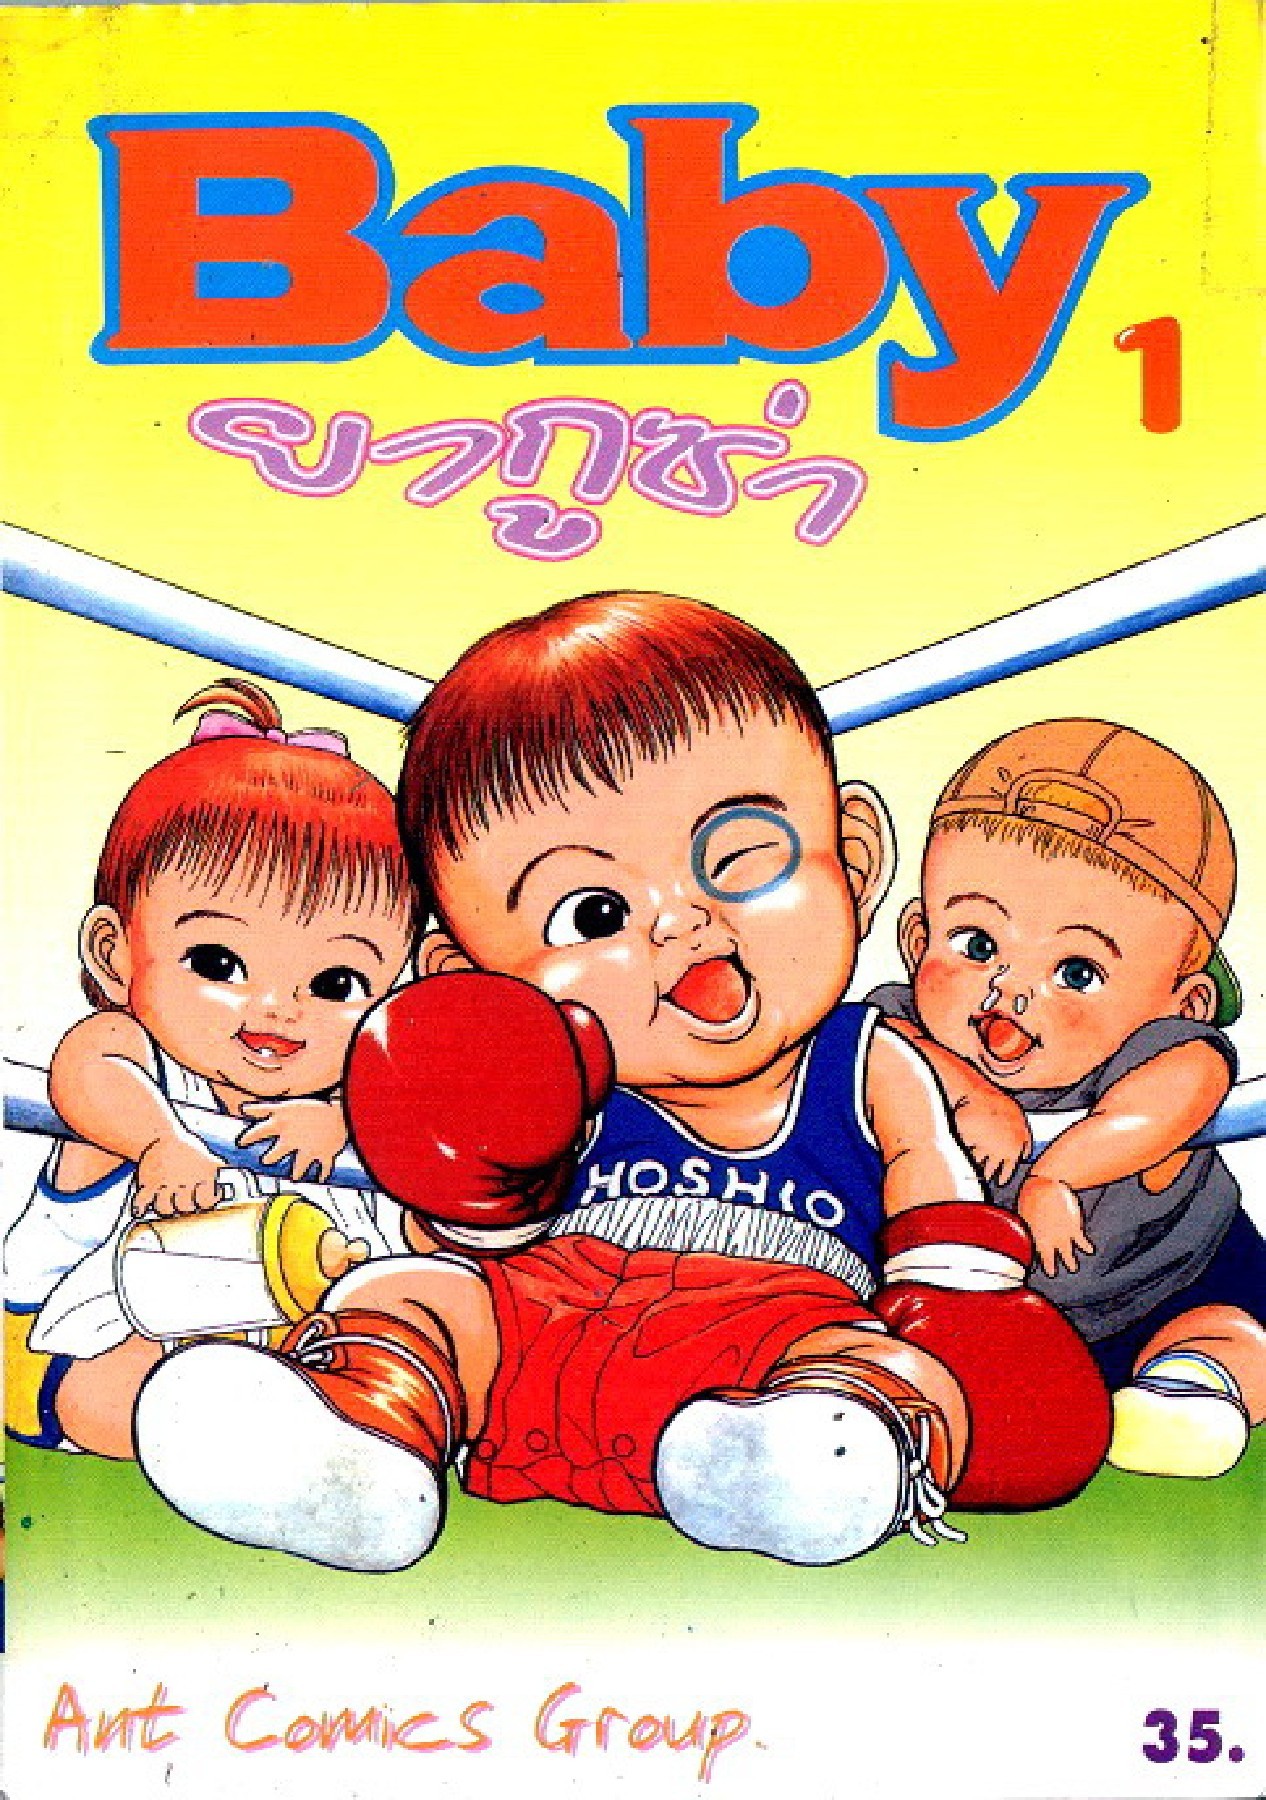 Teiyandei Baby Baby ยากูซ่า เล่มที่ 1-7